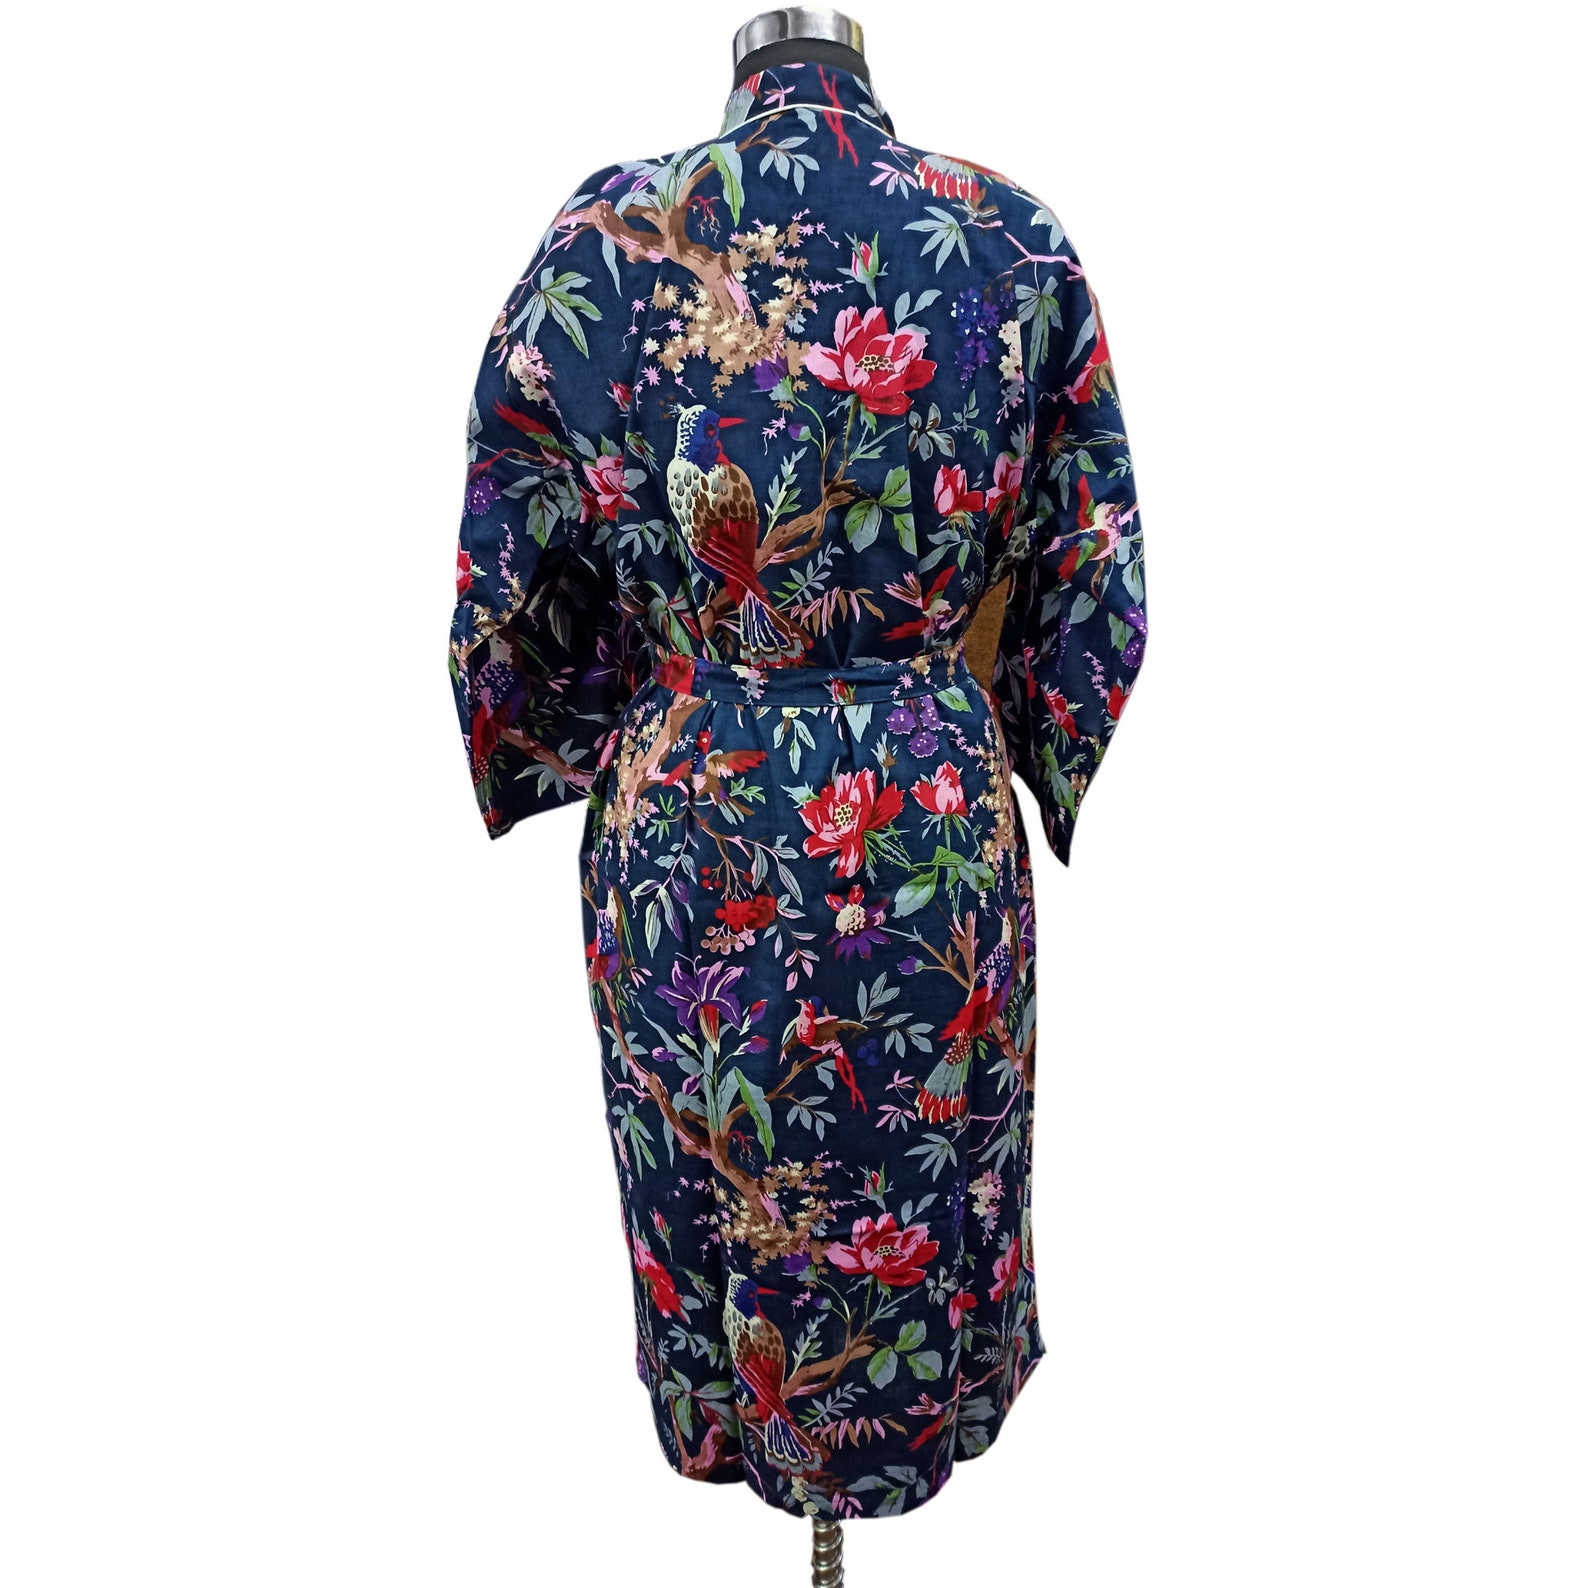 Bird Print Blue Robes Cotton Kimono Robes Floral Kimono | Etsy